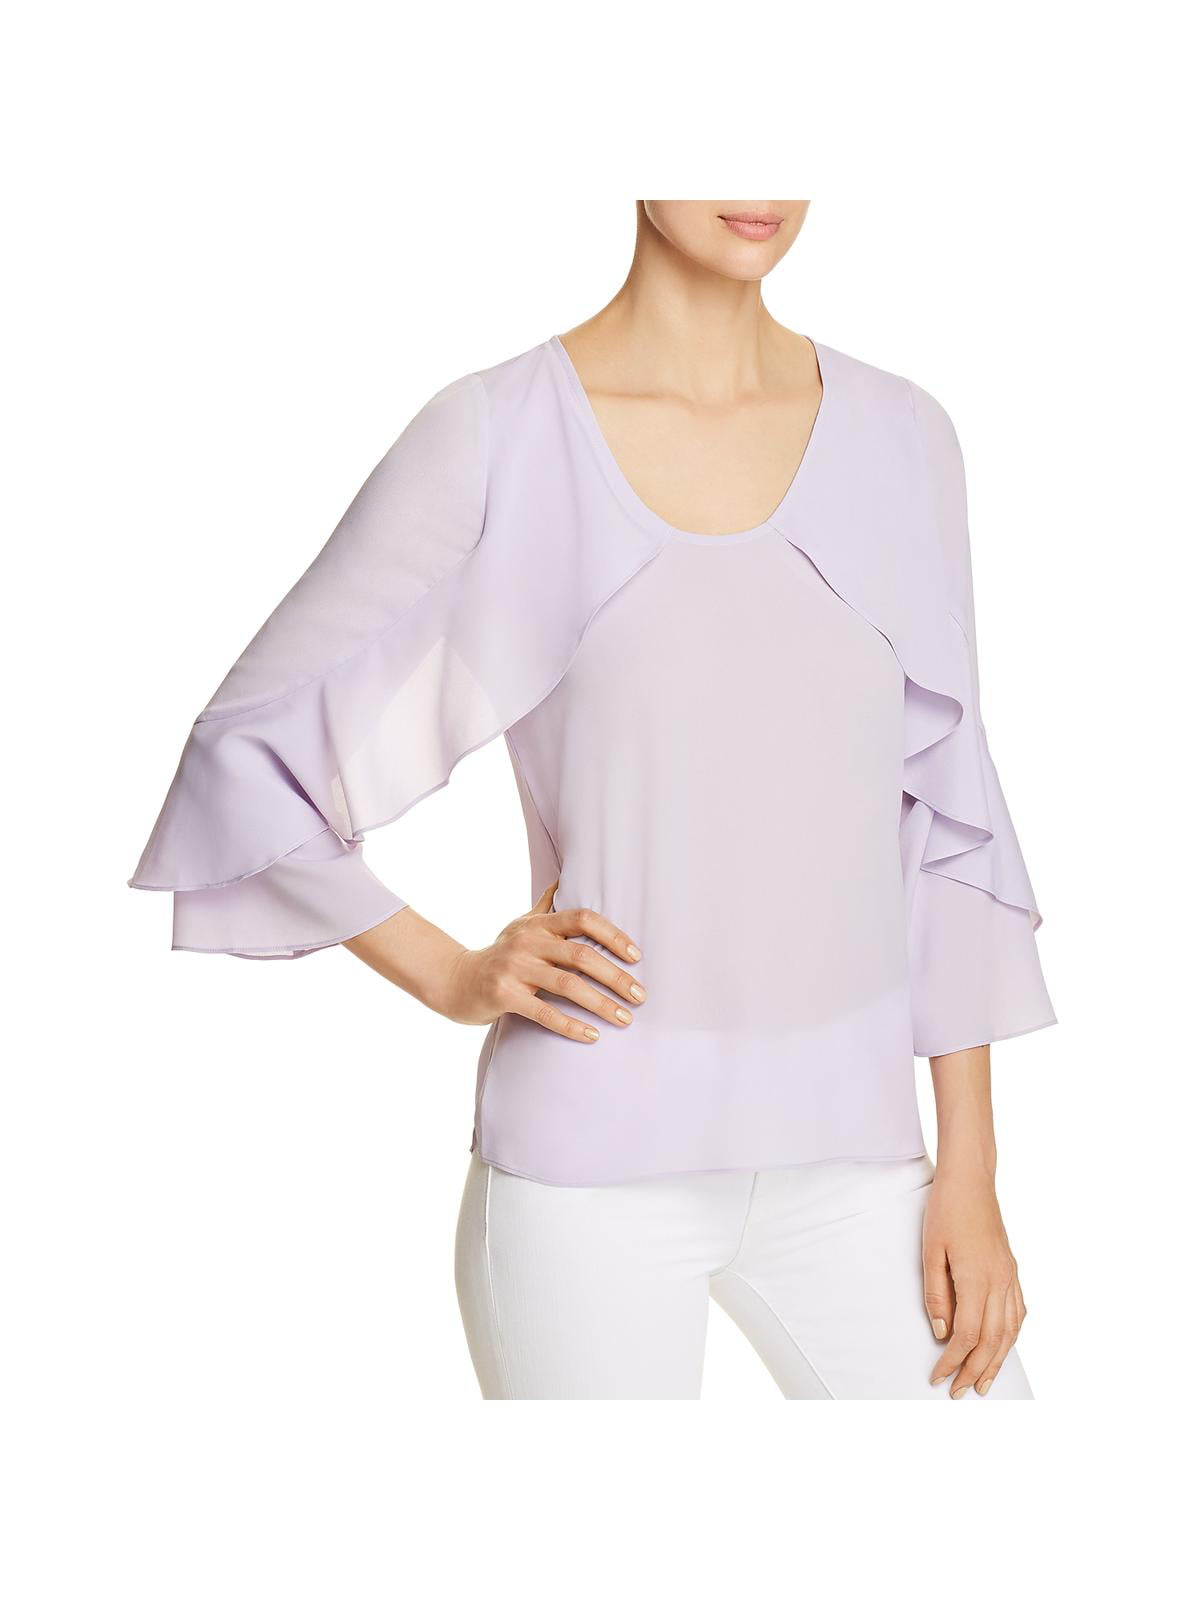 Le Gali Womens Annie Bell Sleeve Ruffled Shirt Blouse Top BHFO 7453 